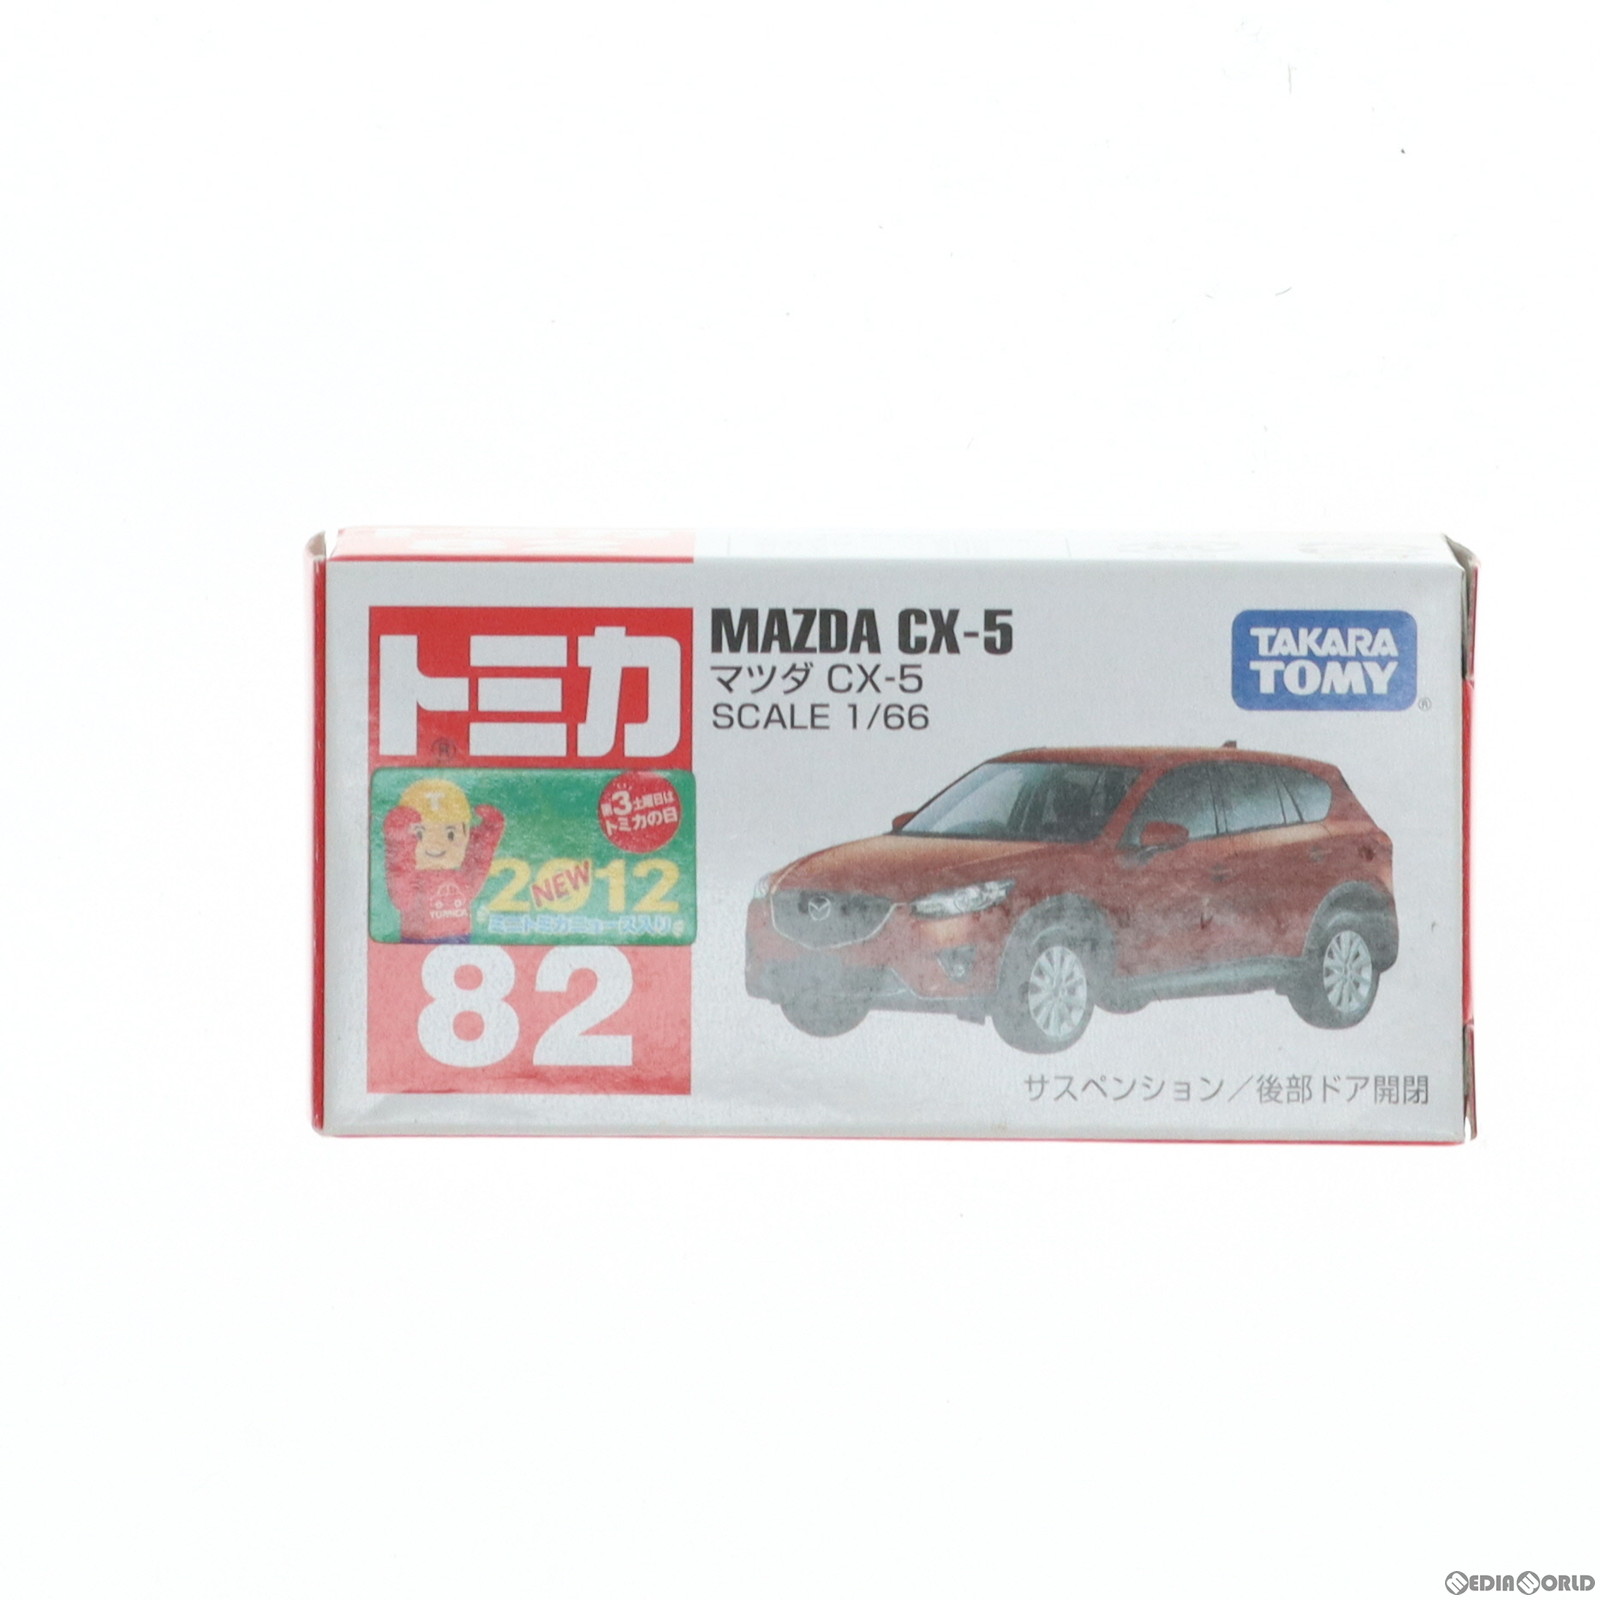 【中古即納】[MDL]トミカ No.82 1/66 マツダ CX-5(レッド/赤箱) 完成品 ミニカー タカラトミー(20121215)